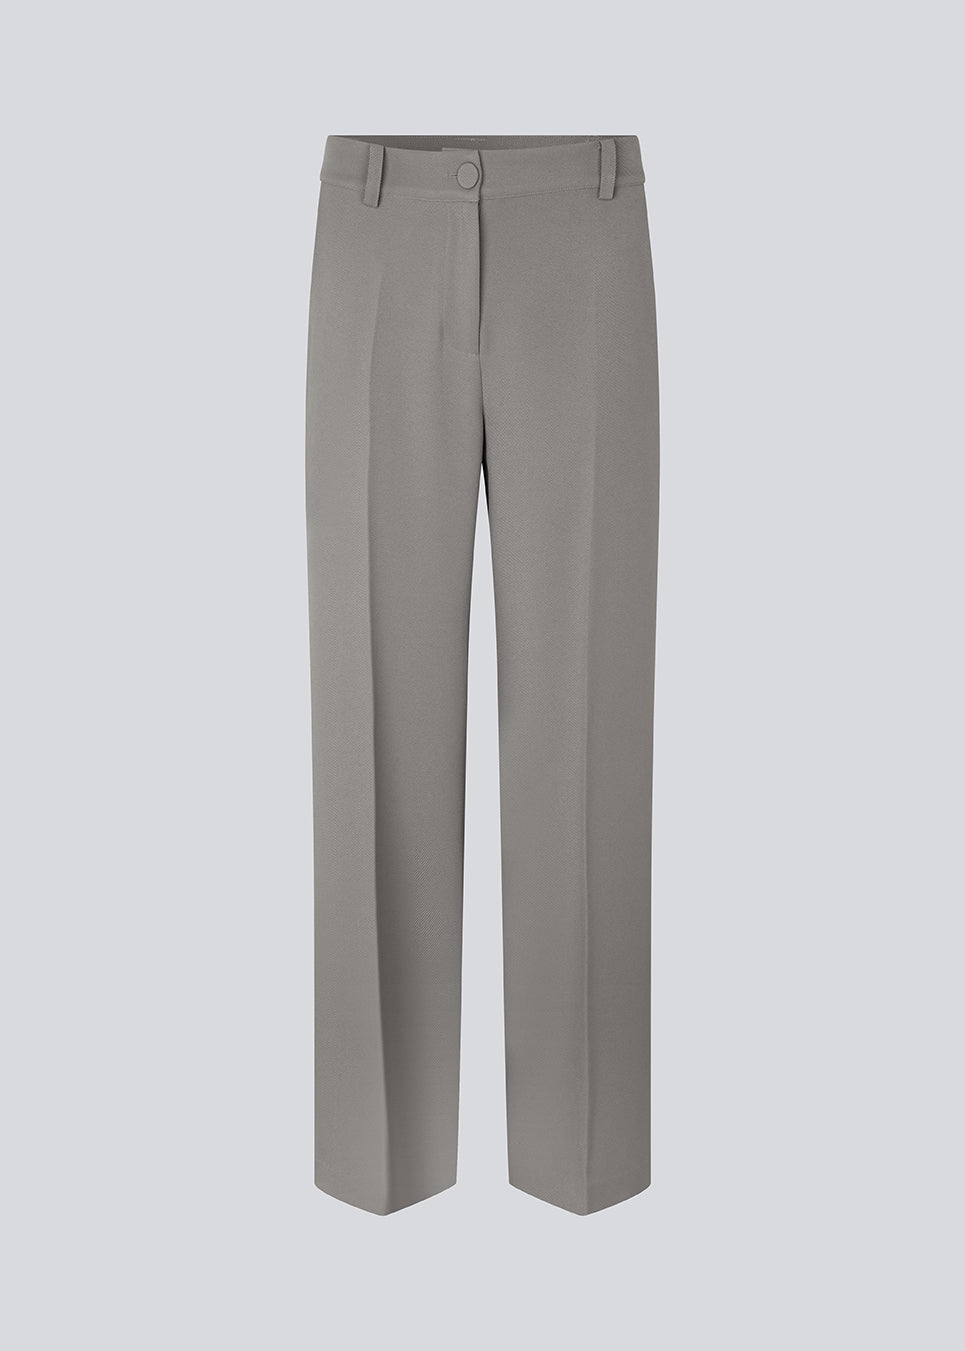 Buy GrayMD pants - Steeple Gray – Modström COM